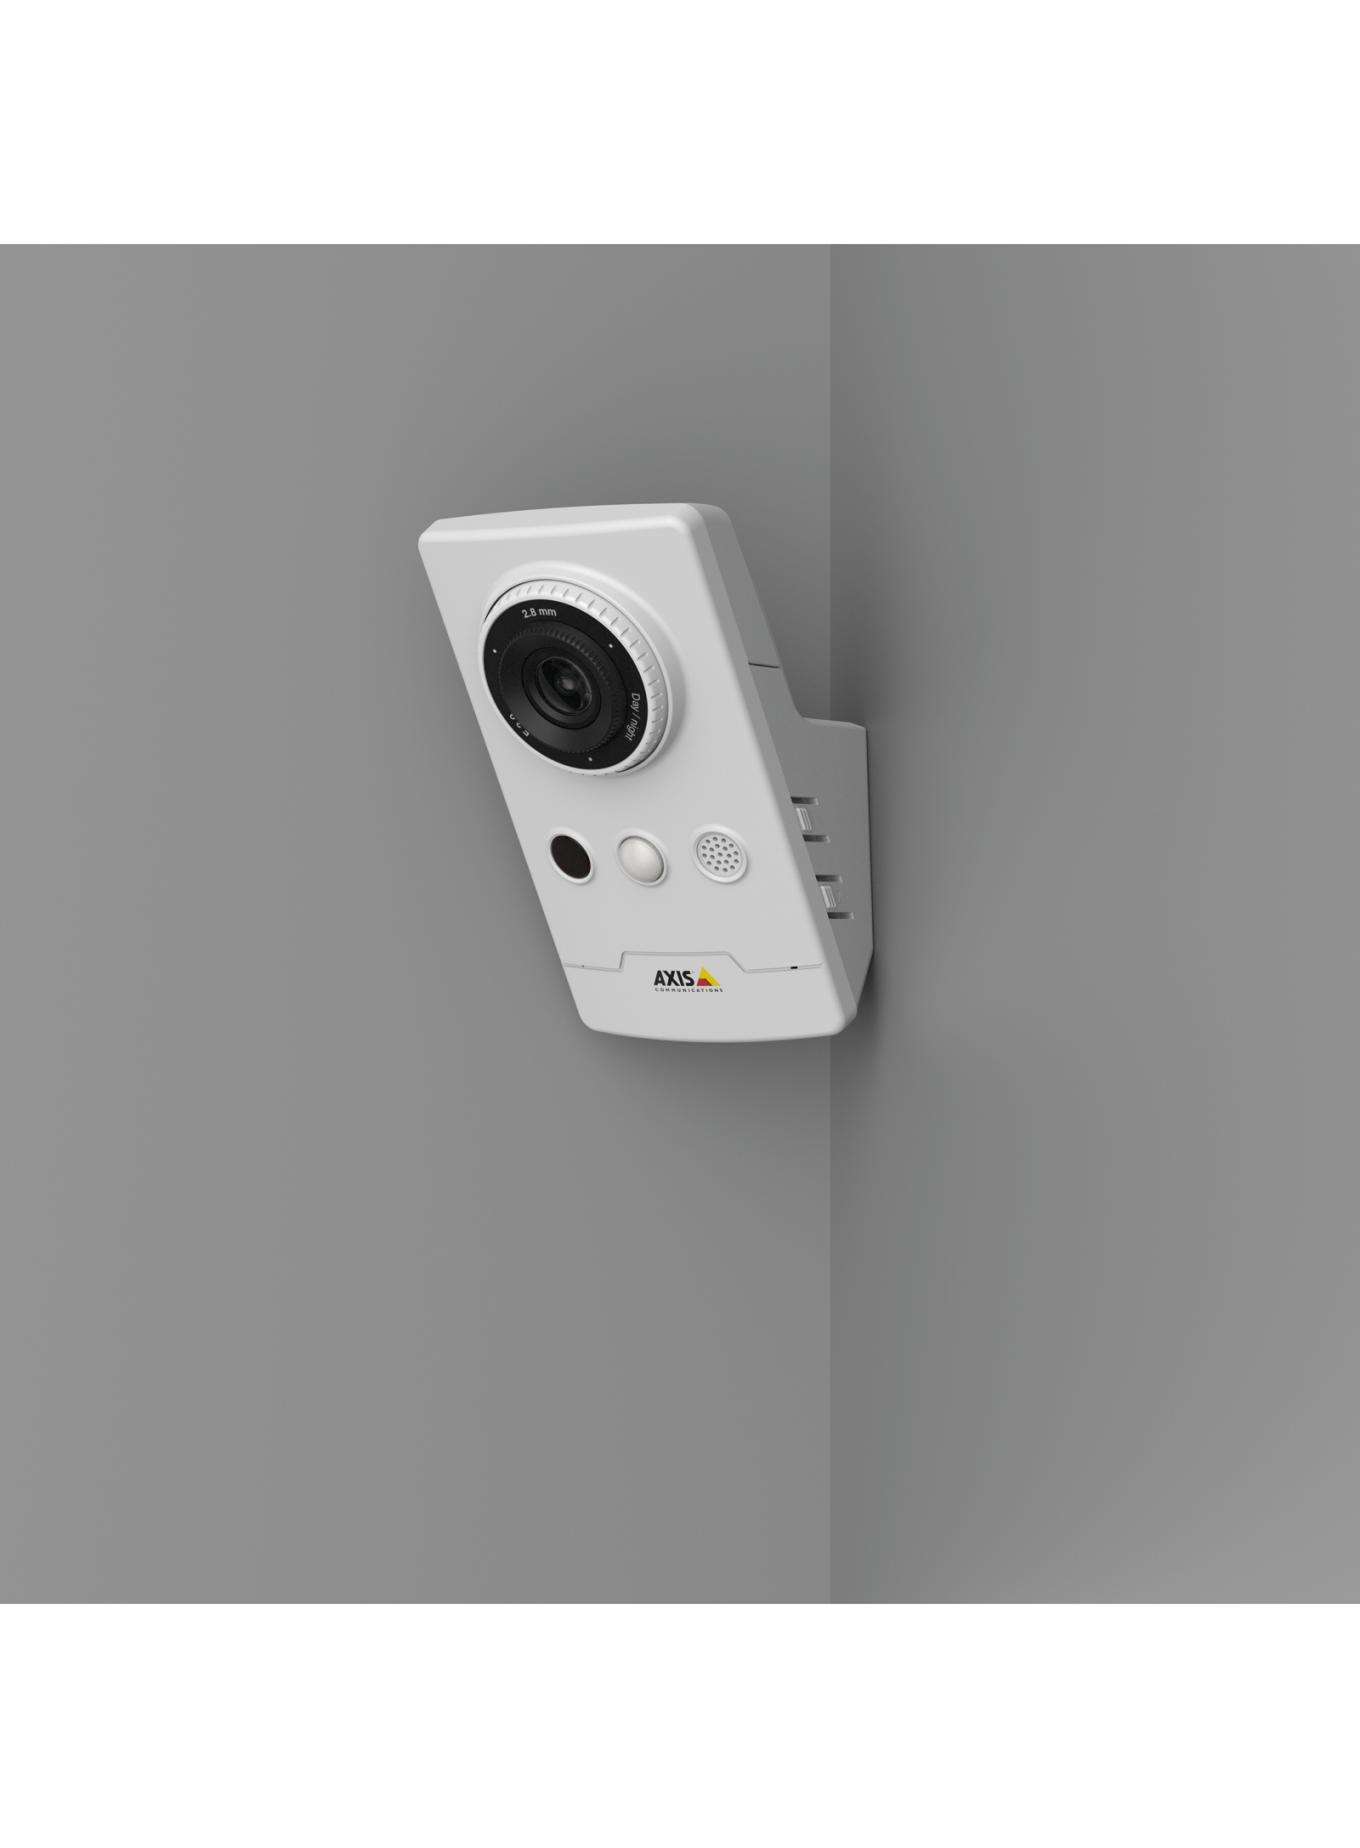 AXIS M1065-LW IP-Kamera an einer grauen Wand in der Ecke montiert